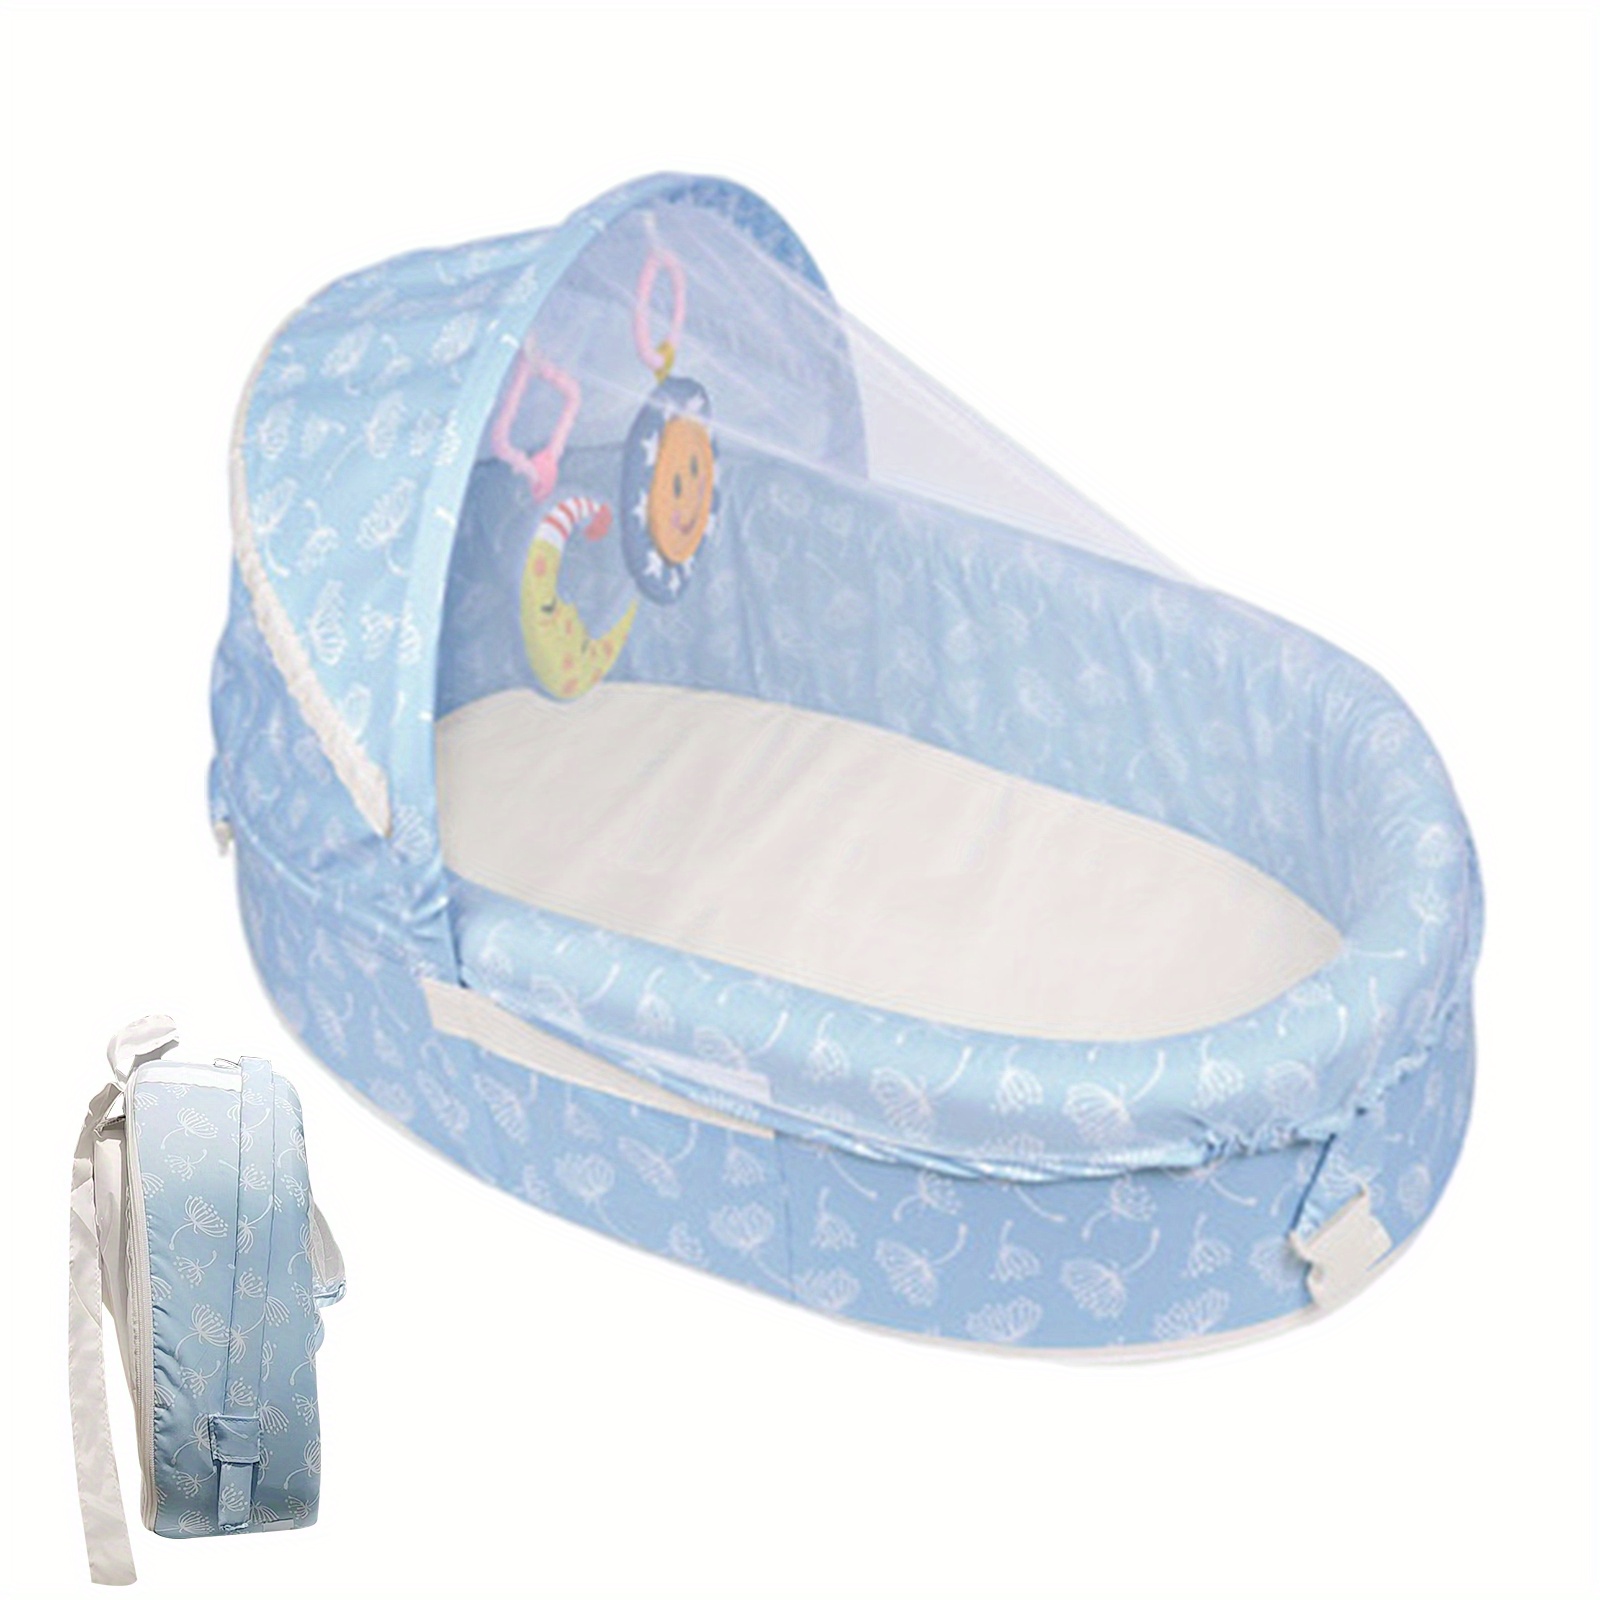 compatibles Lit pliable pour bébé couffin Portable en coton filet de  Protection solaire panier de couchage respirant pour bébé avec jouets